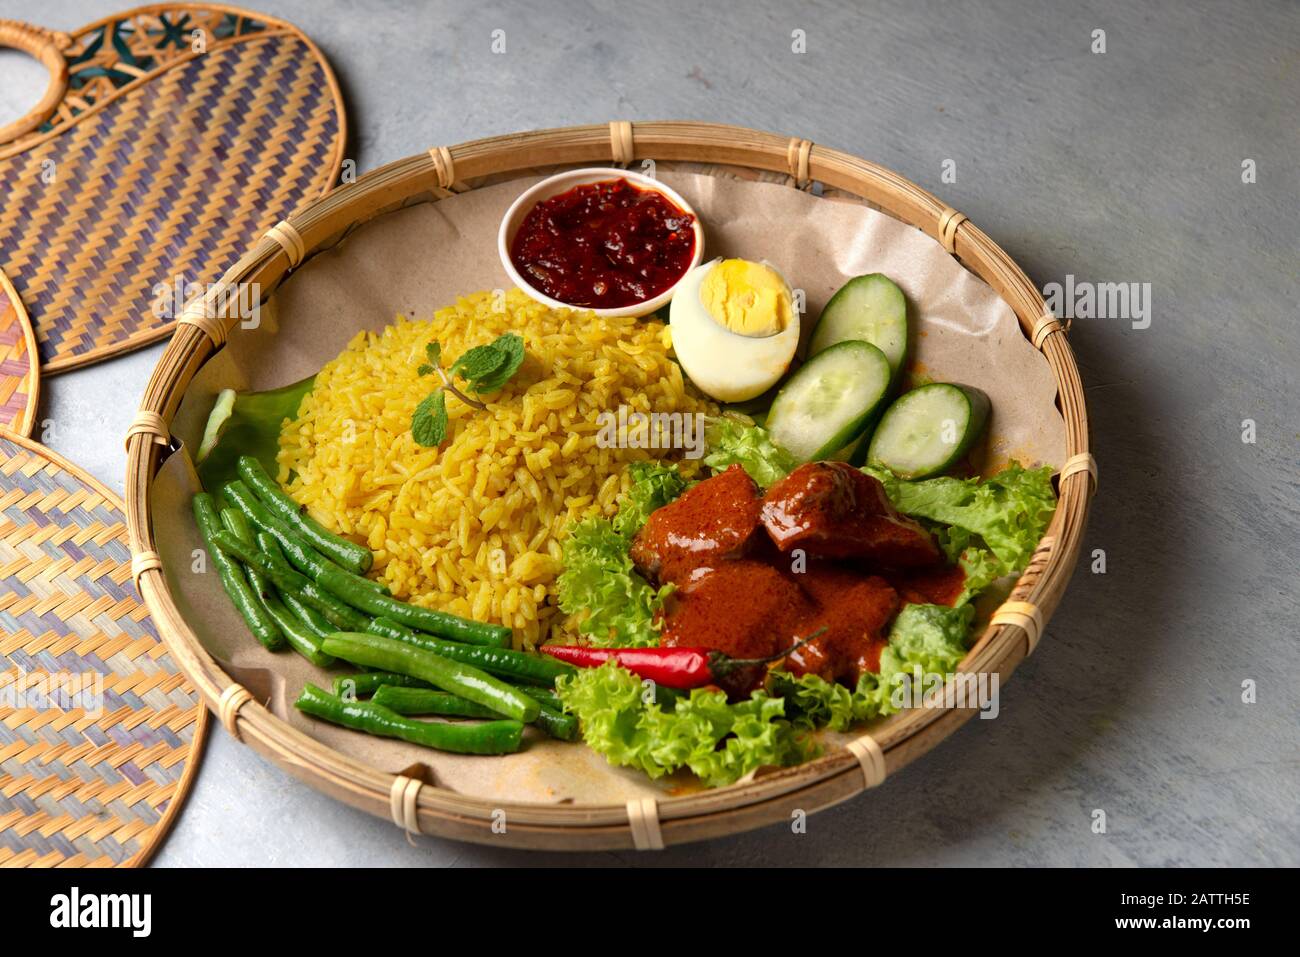 Turmeric rice with curry or nasi kunyit kuning, popular dish in malaysia Stock Photo